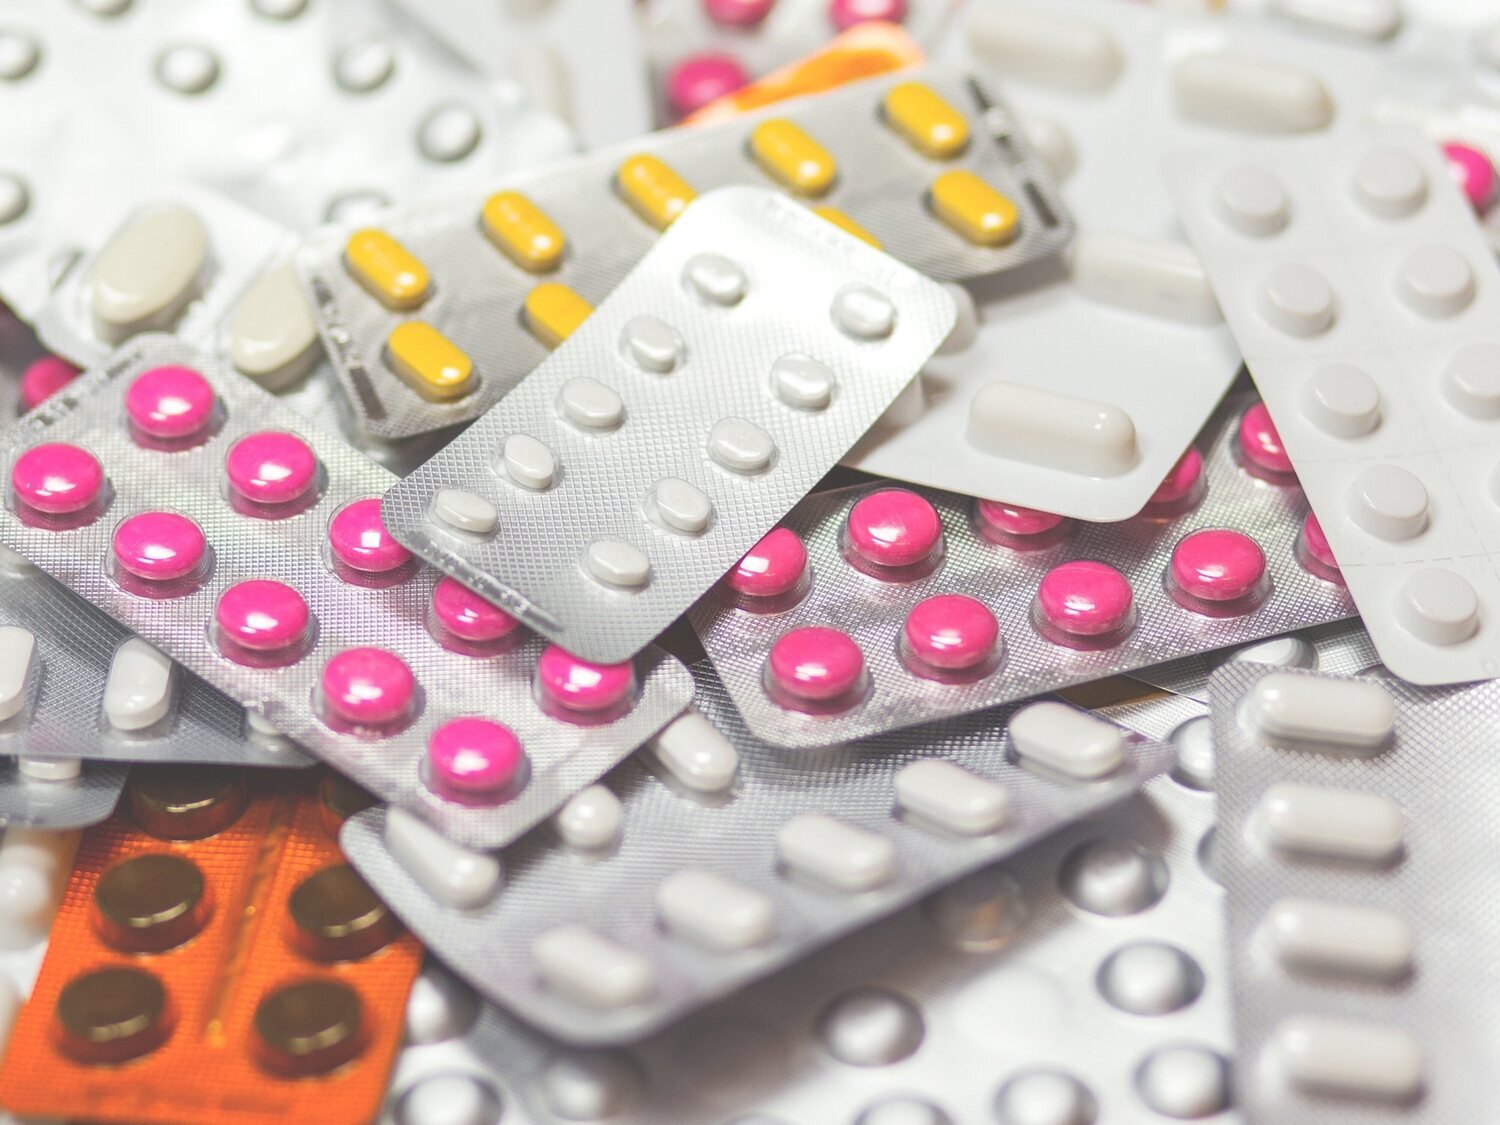 Alerta sanitaria: las autoridades europeas piden suspender la venta de estos fármacos